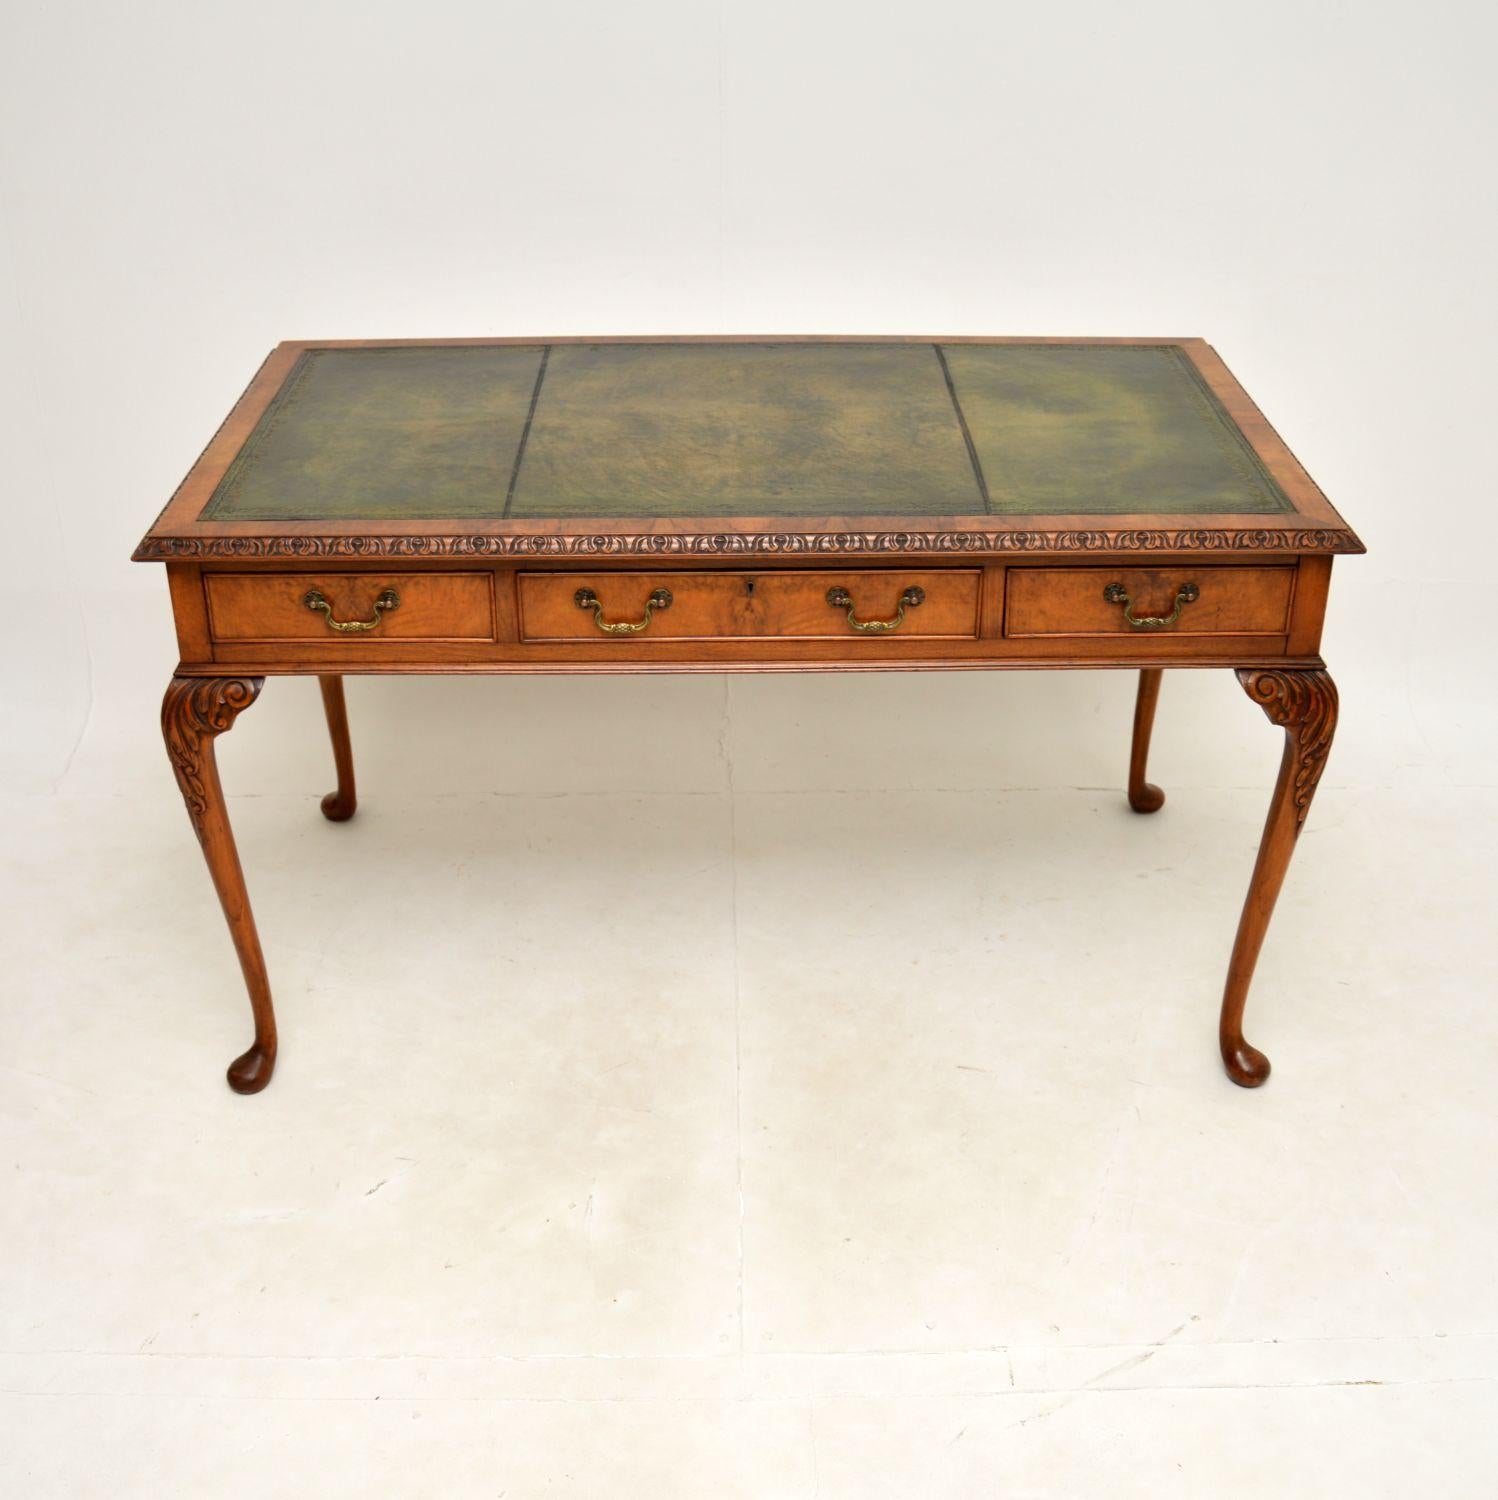 Un superbe bureau / table à écrire antique en ronce de noyer avec dessus en cuir. De style Queen Anne, il a été fabriqué en Angleterre et date de la période 1900-1920.

Il est d'une superbe qualité et d'une grande taille, avec beaucoup d'espace de